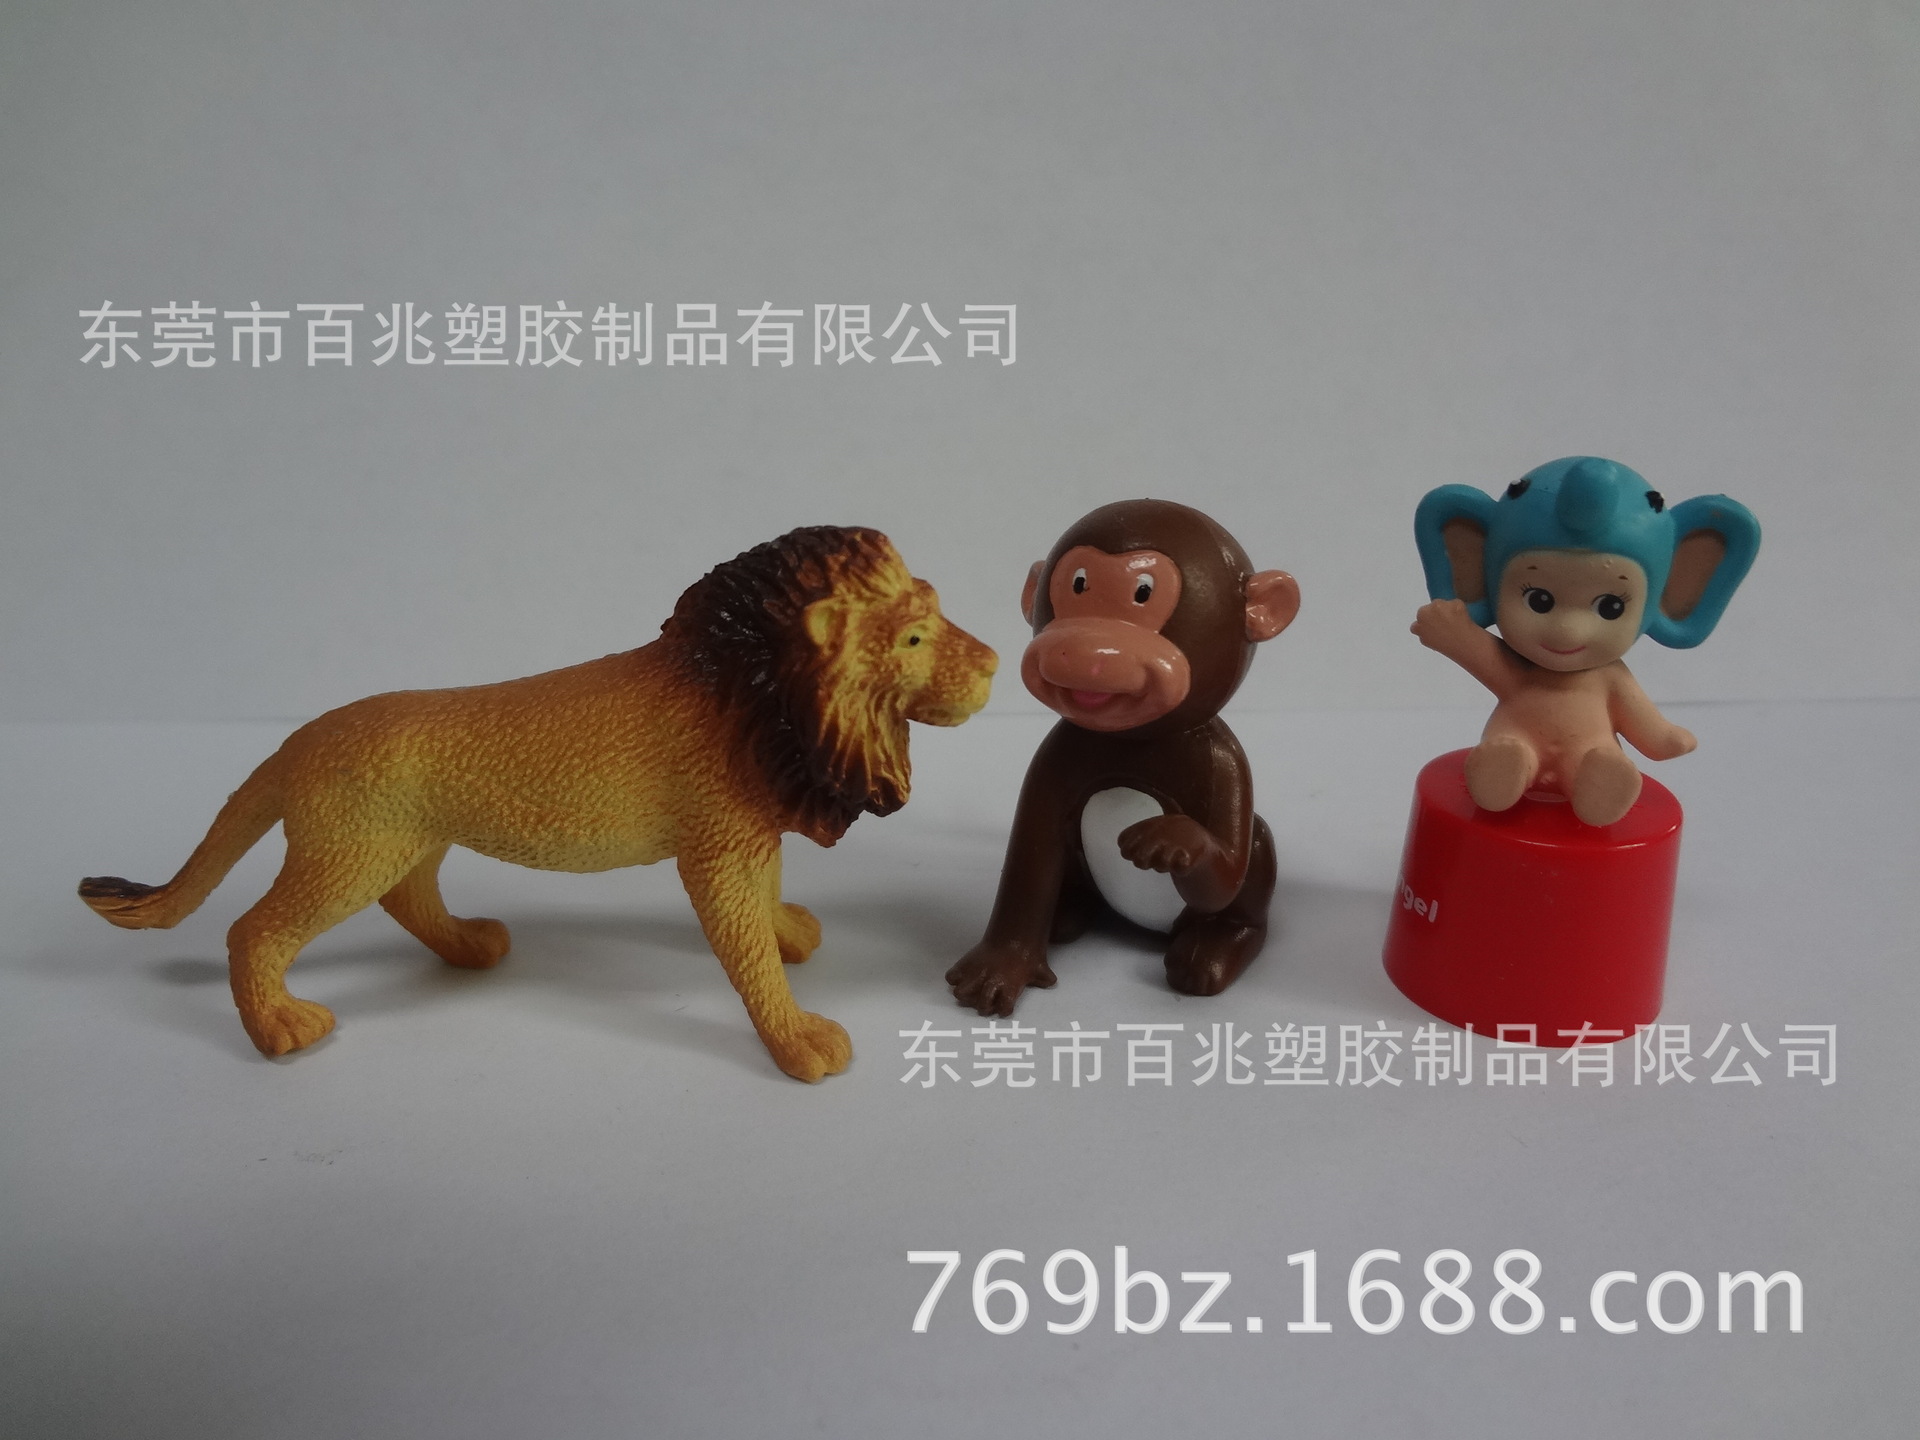 东莞厂家供应 塑胶狮子办公桌饰品 精美设计狮子注塑玩偶来图定制示例图3